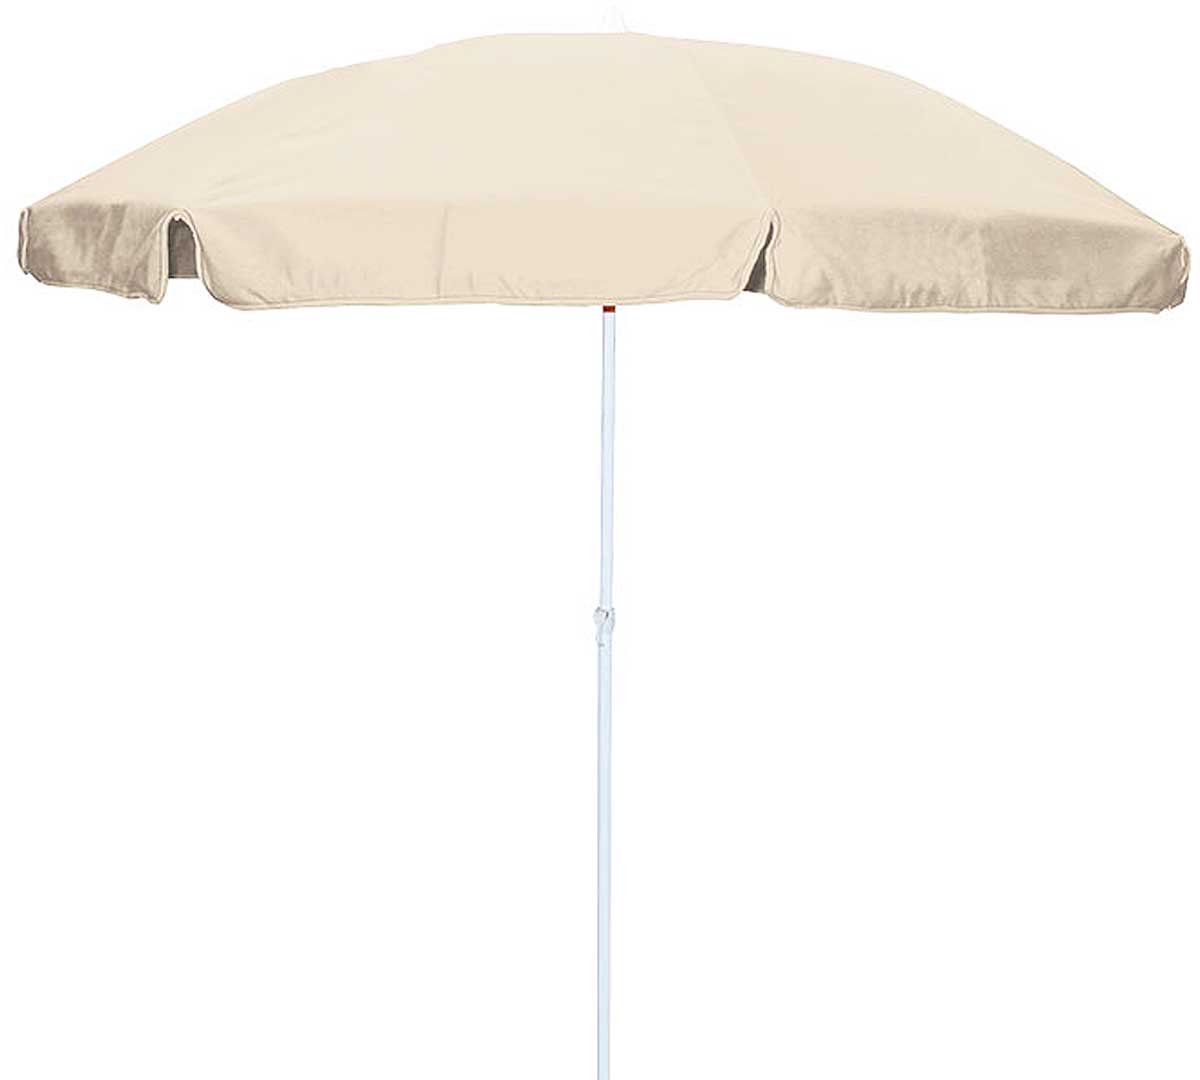 conva-parasol-aluminio-blanco-821-01